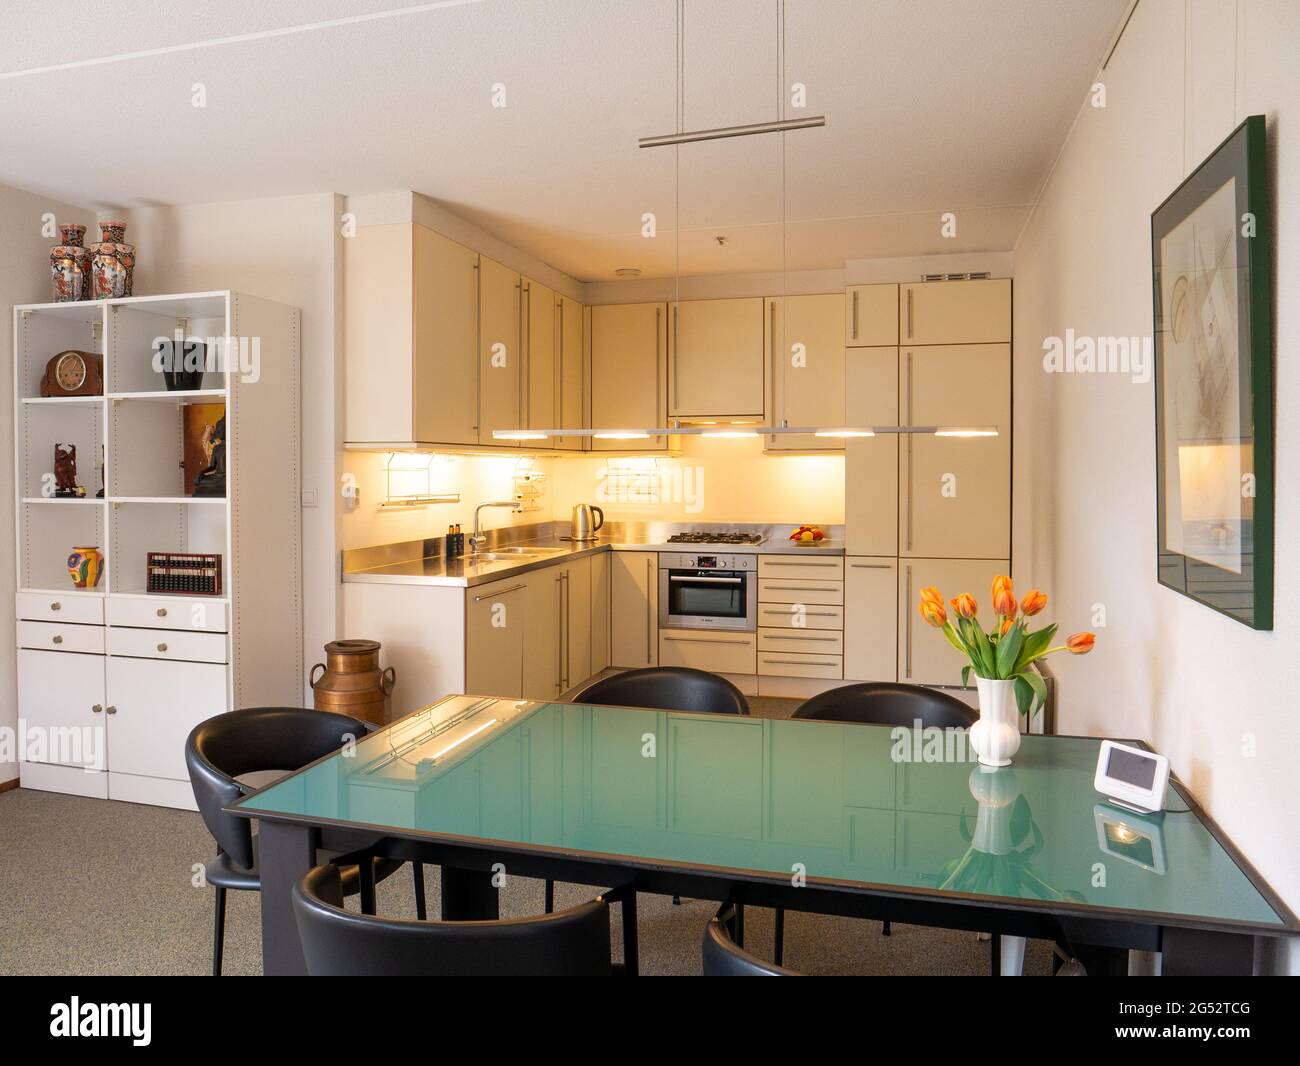 Modernes Haus offene Küche Esszimmer Esszimmer mit Esstisch, Niederlande  Stockfotografie - Alamy